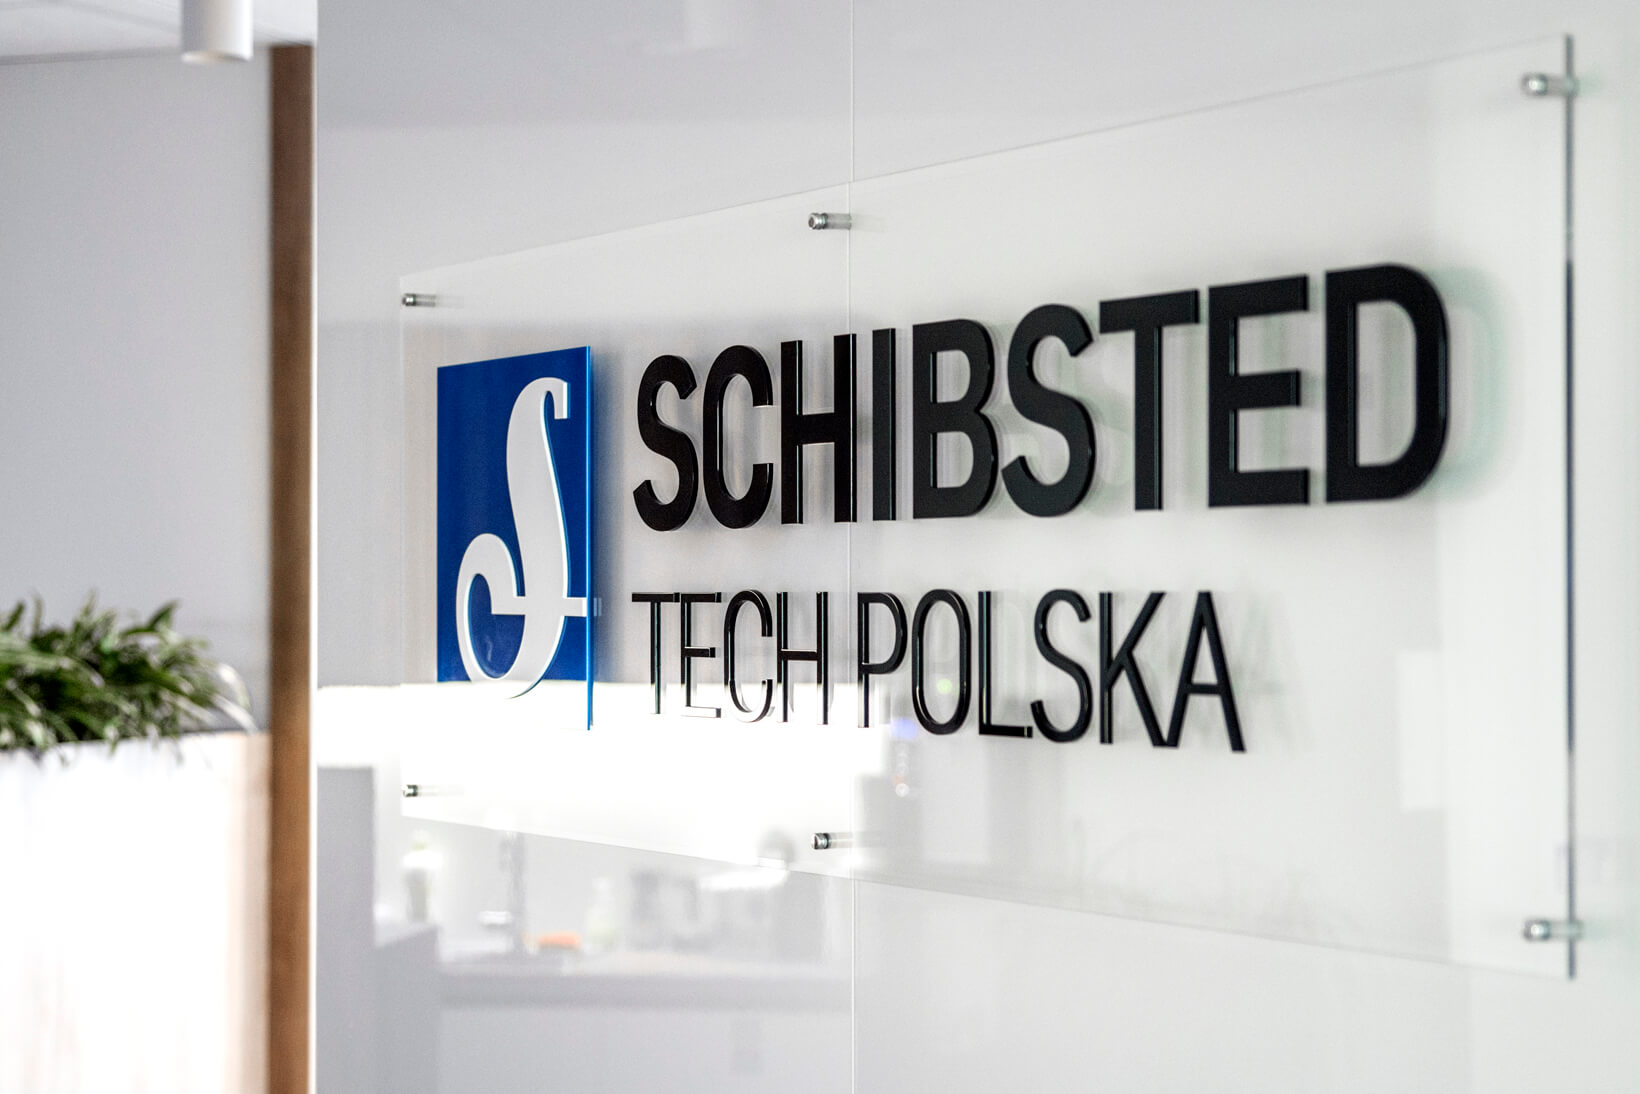 Schibsted Tech Polen - Schibsted Tech Poland - Logo und 3D-Buchstaben auf Basis von Plexiglas auf den Abstandshaltern im Empfangsbereich